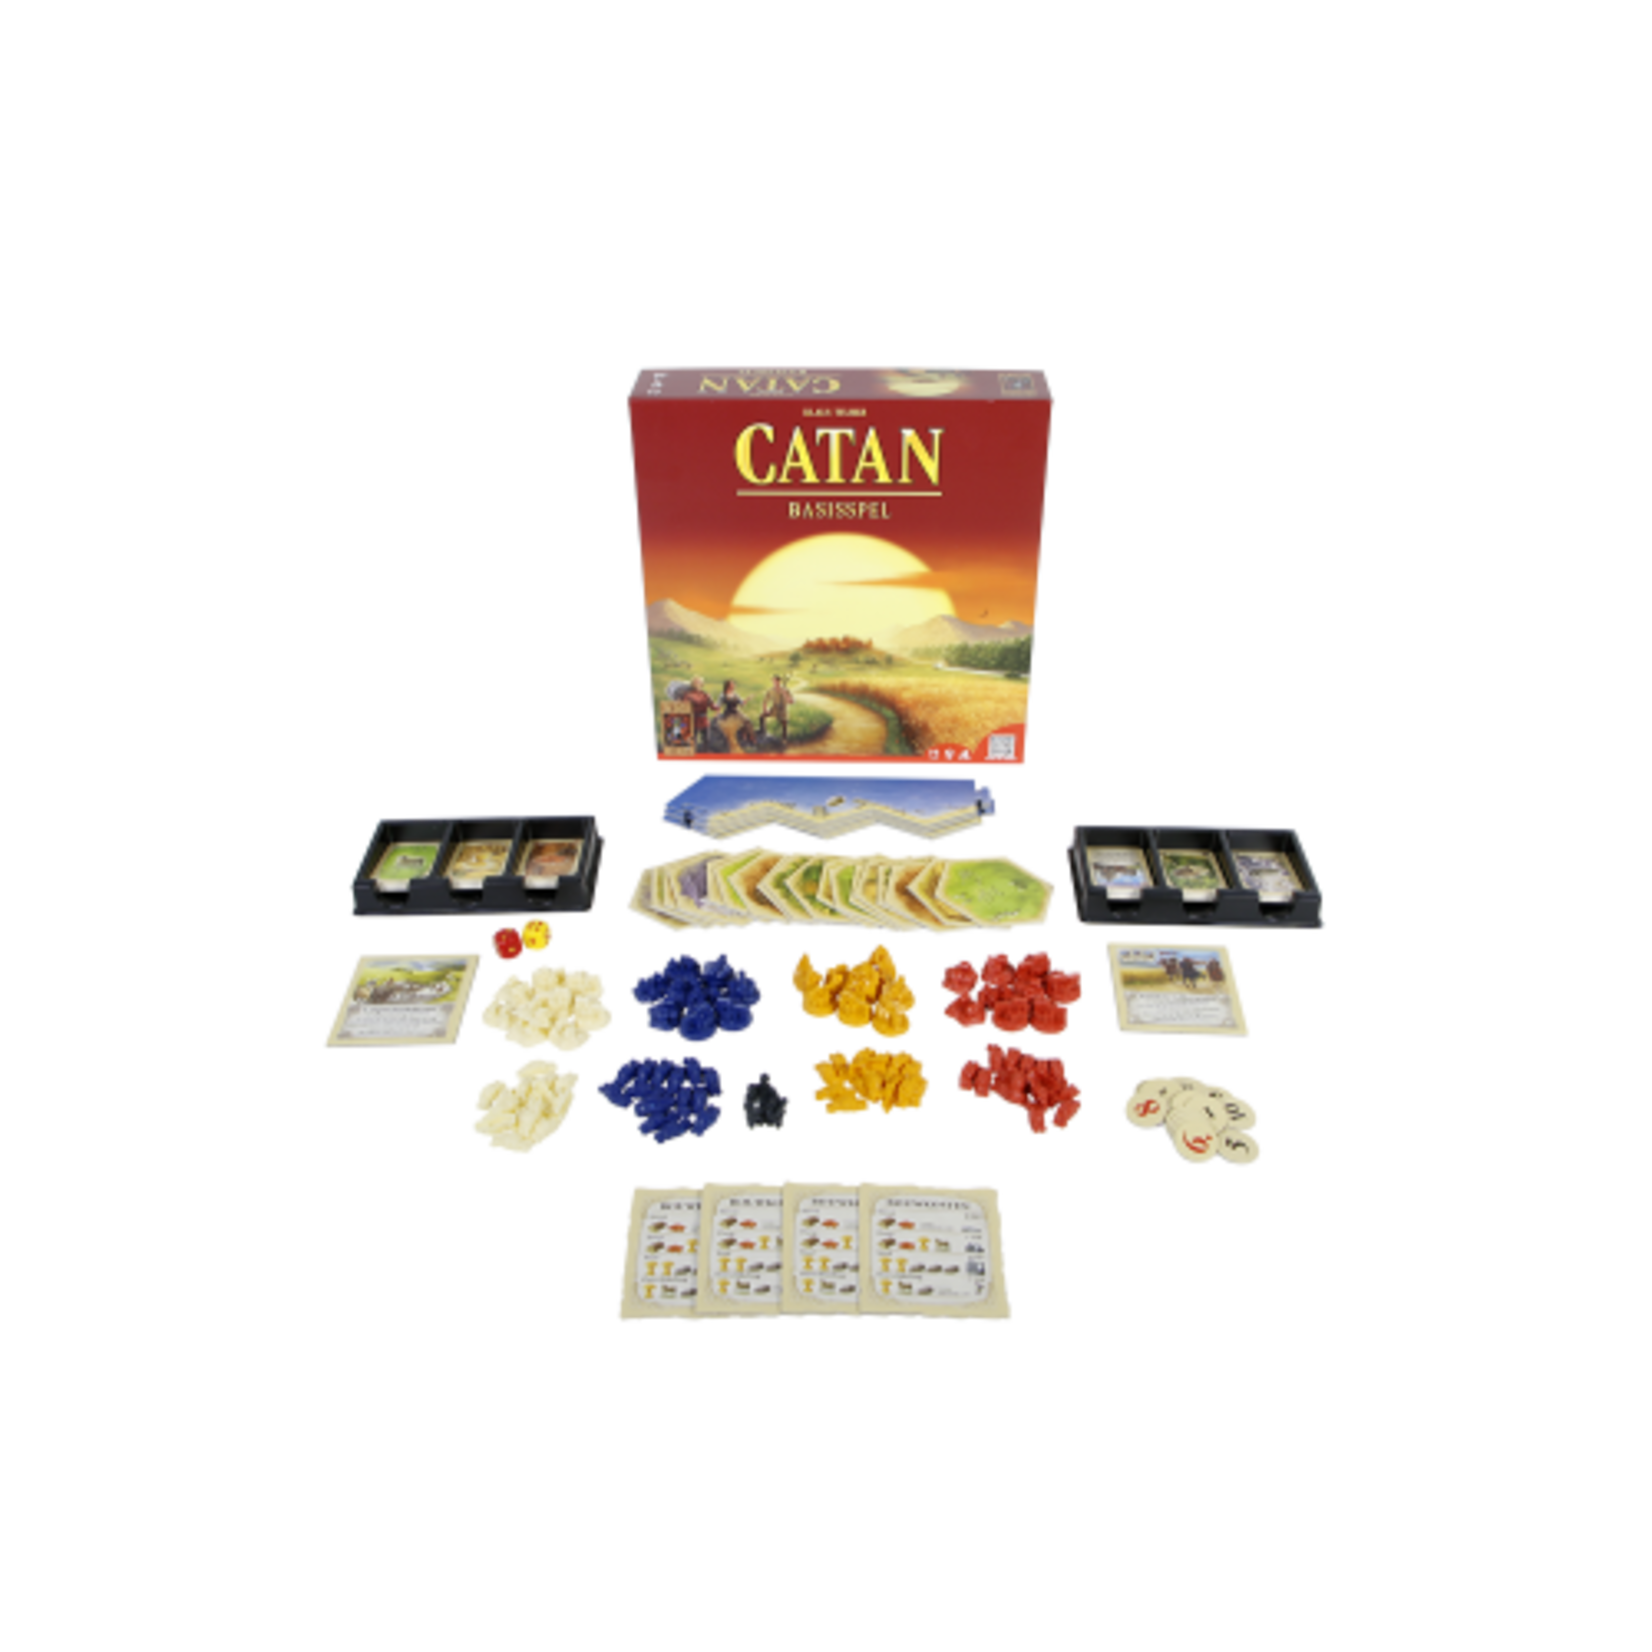 999-Games Catan (NL)